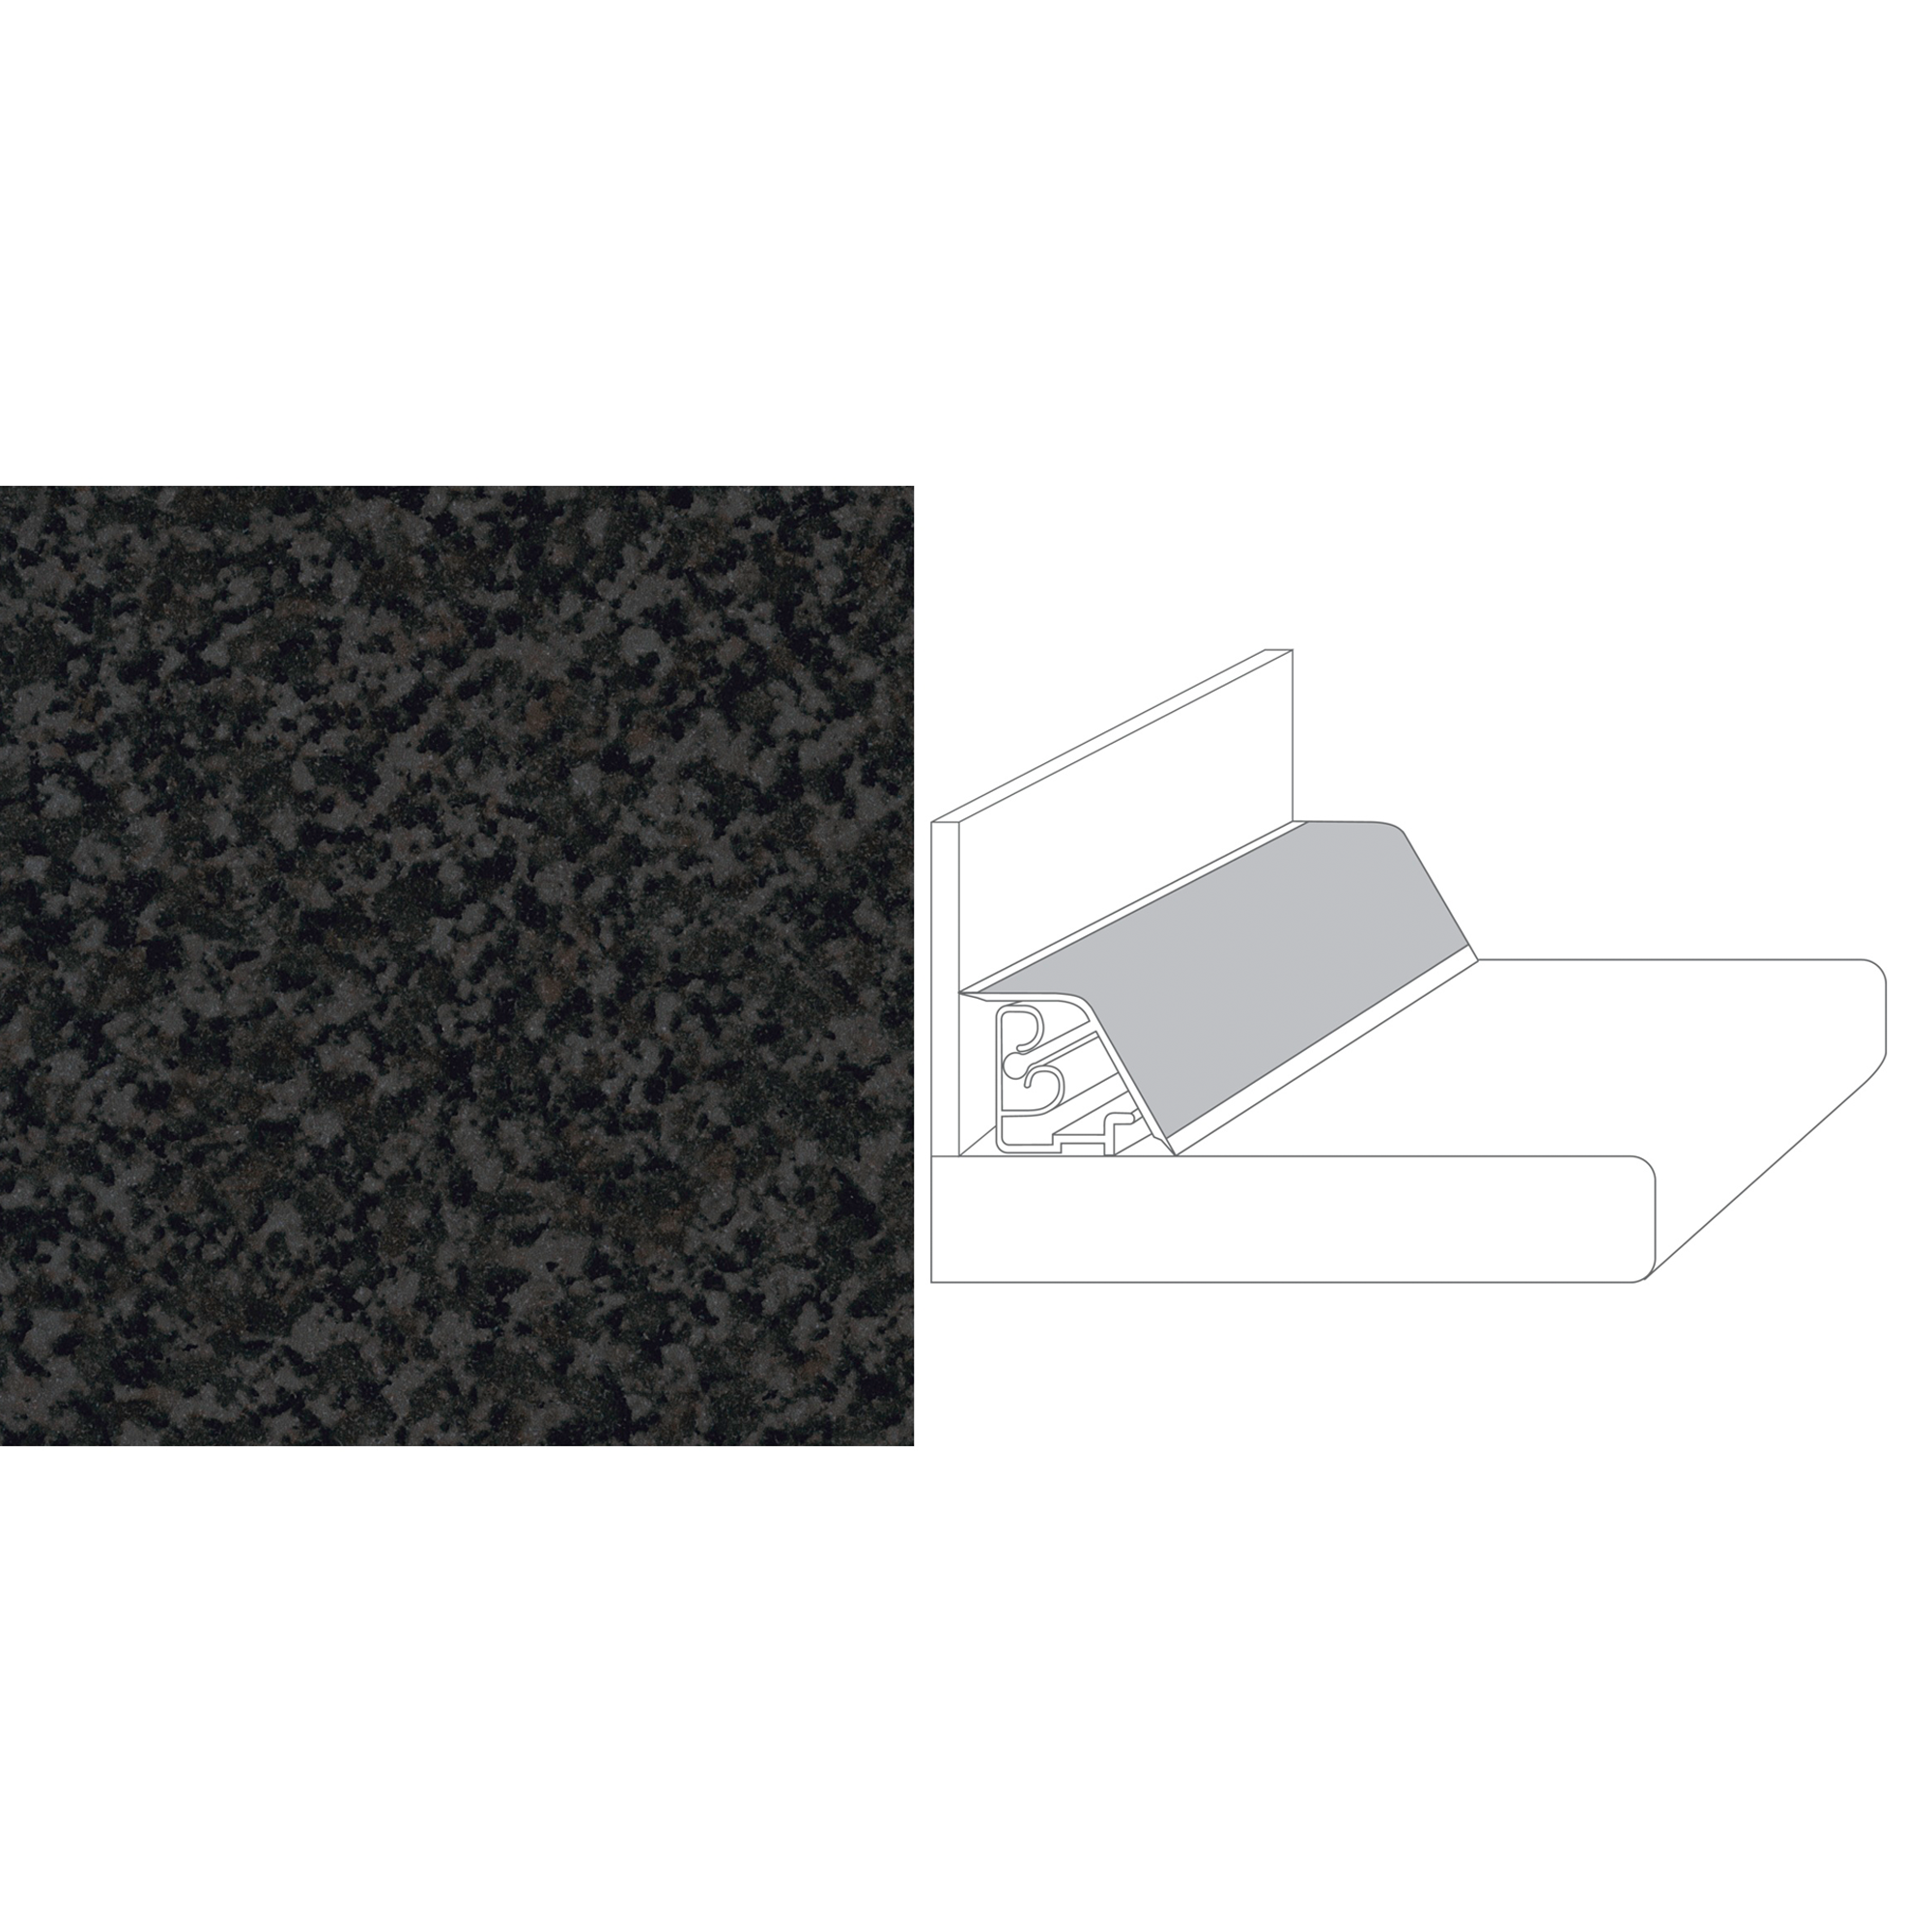 Wandanschlussprofil Granit-Optik anthrazit 2,7 x 3,5 x 59 cm + product picture